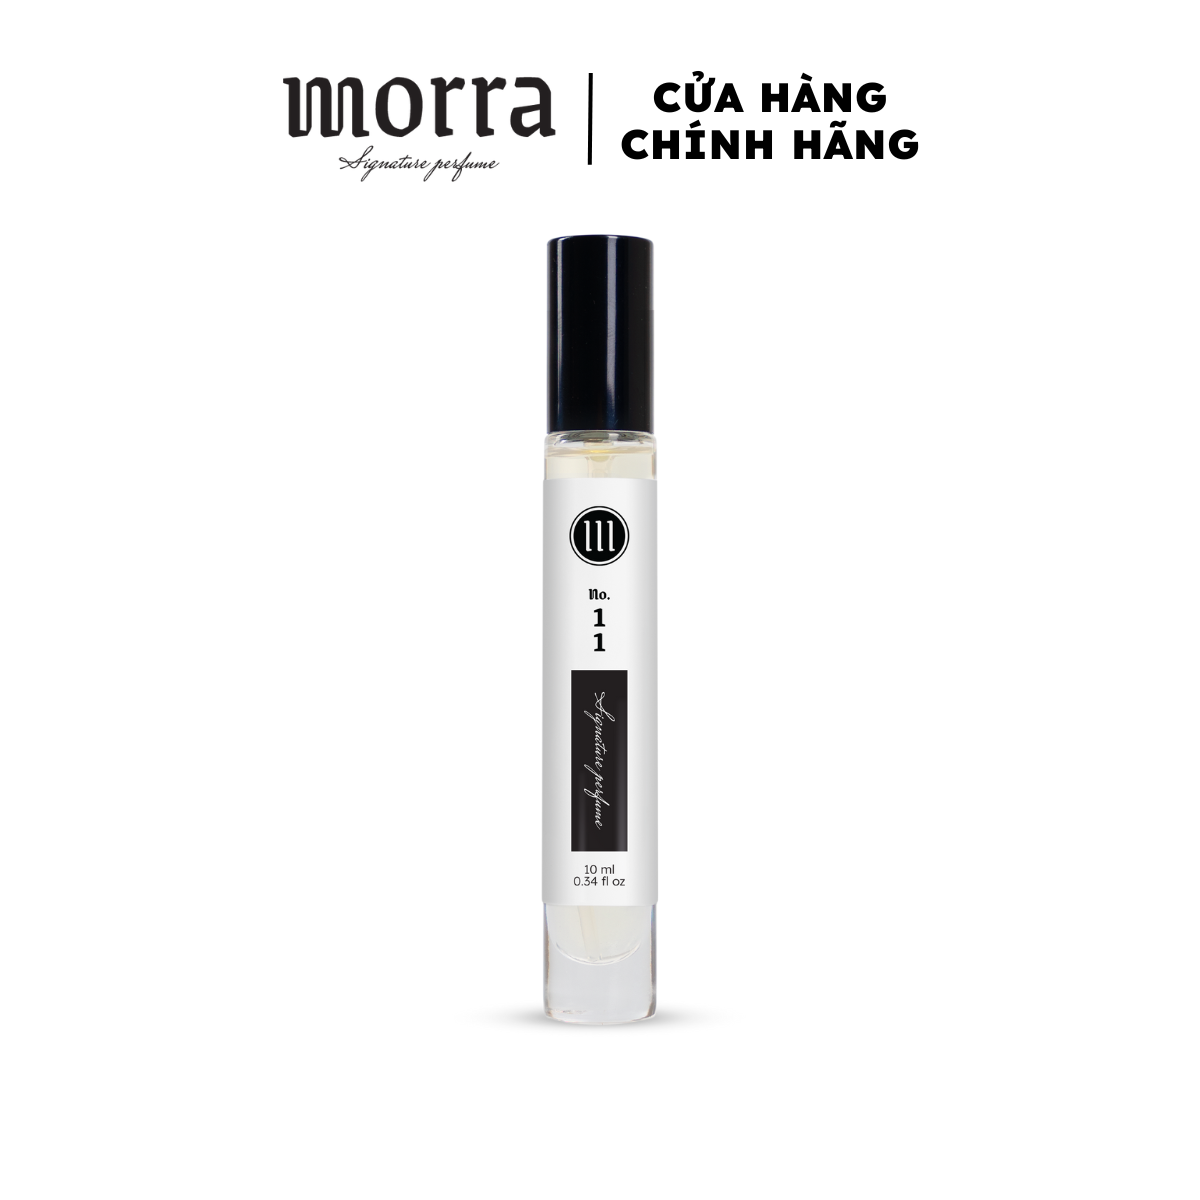 Nước hoa nữ Morra No.11 (Mandarina Aqua 11) nguyên liệu nhập Pháp, hương thơm trẻ trung, năng động, lưu hương lâu - dạng xịt